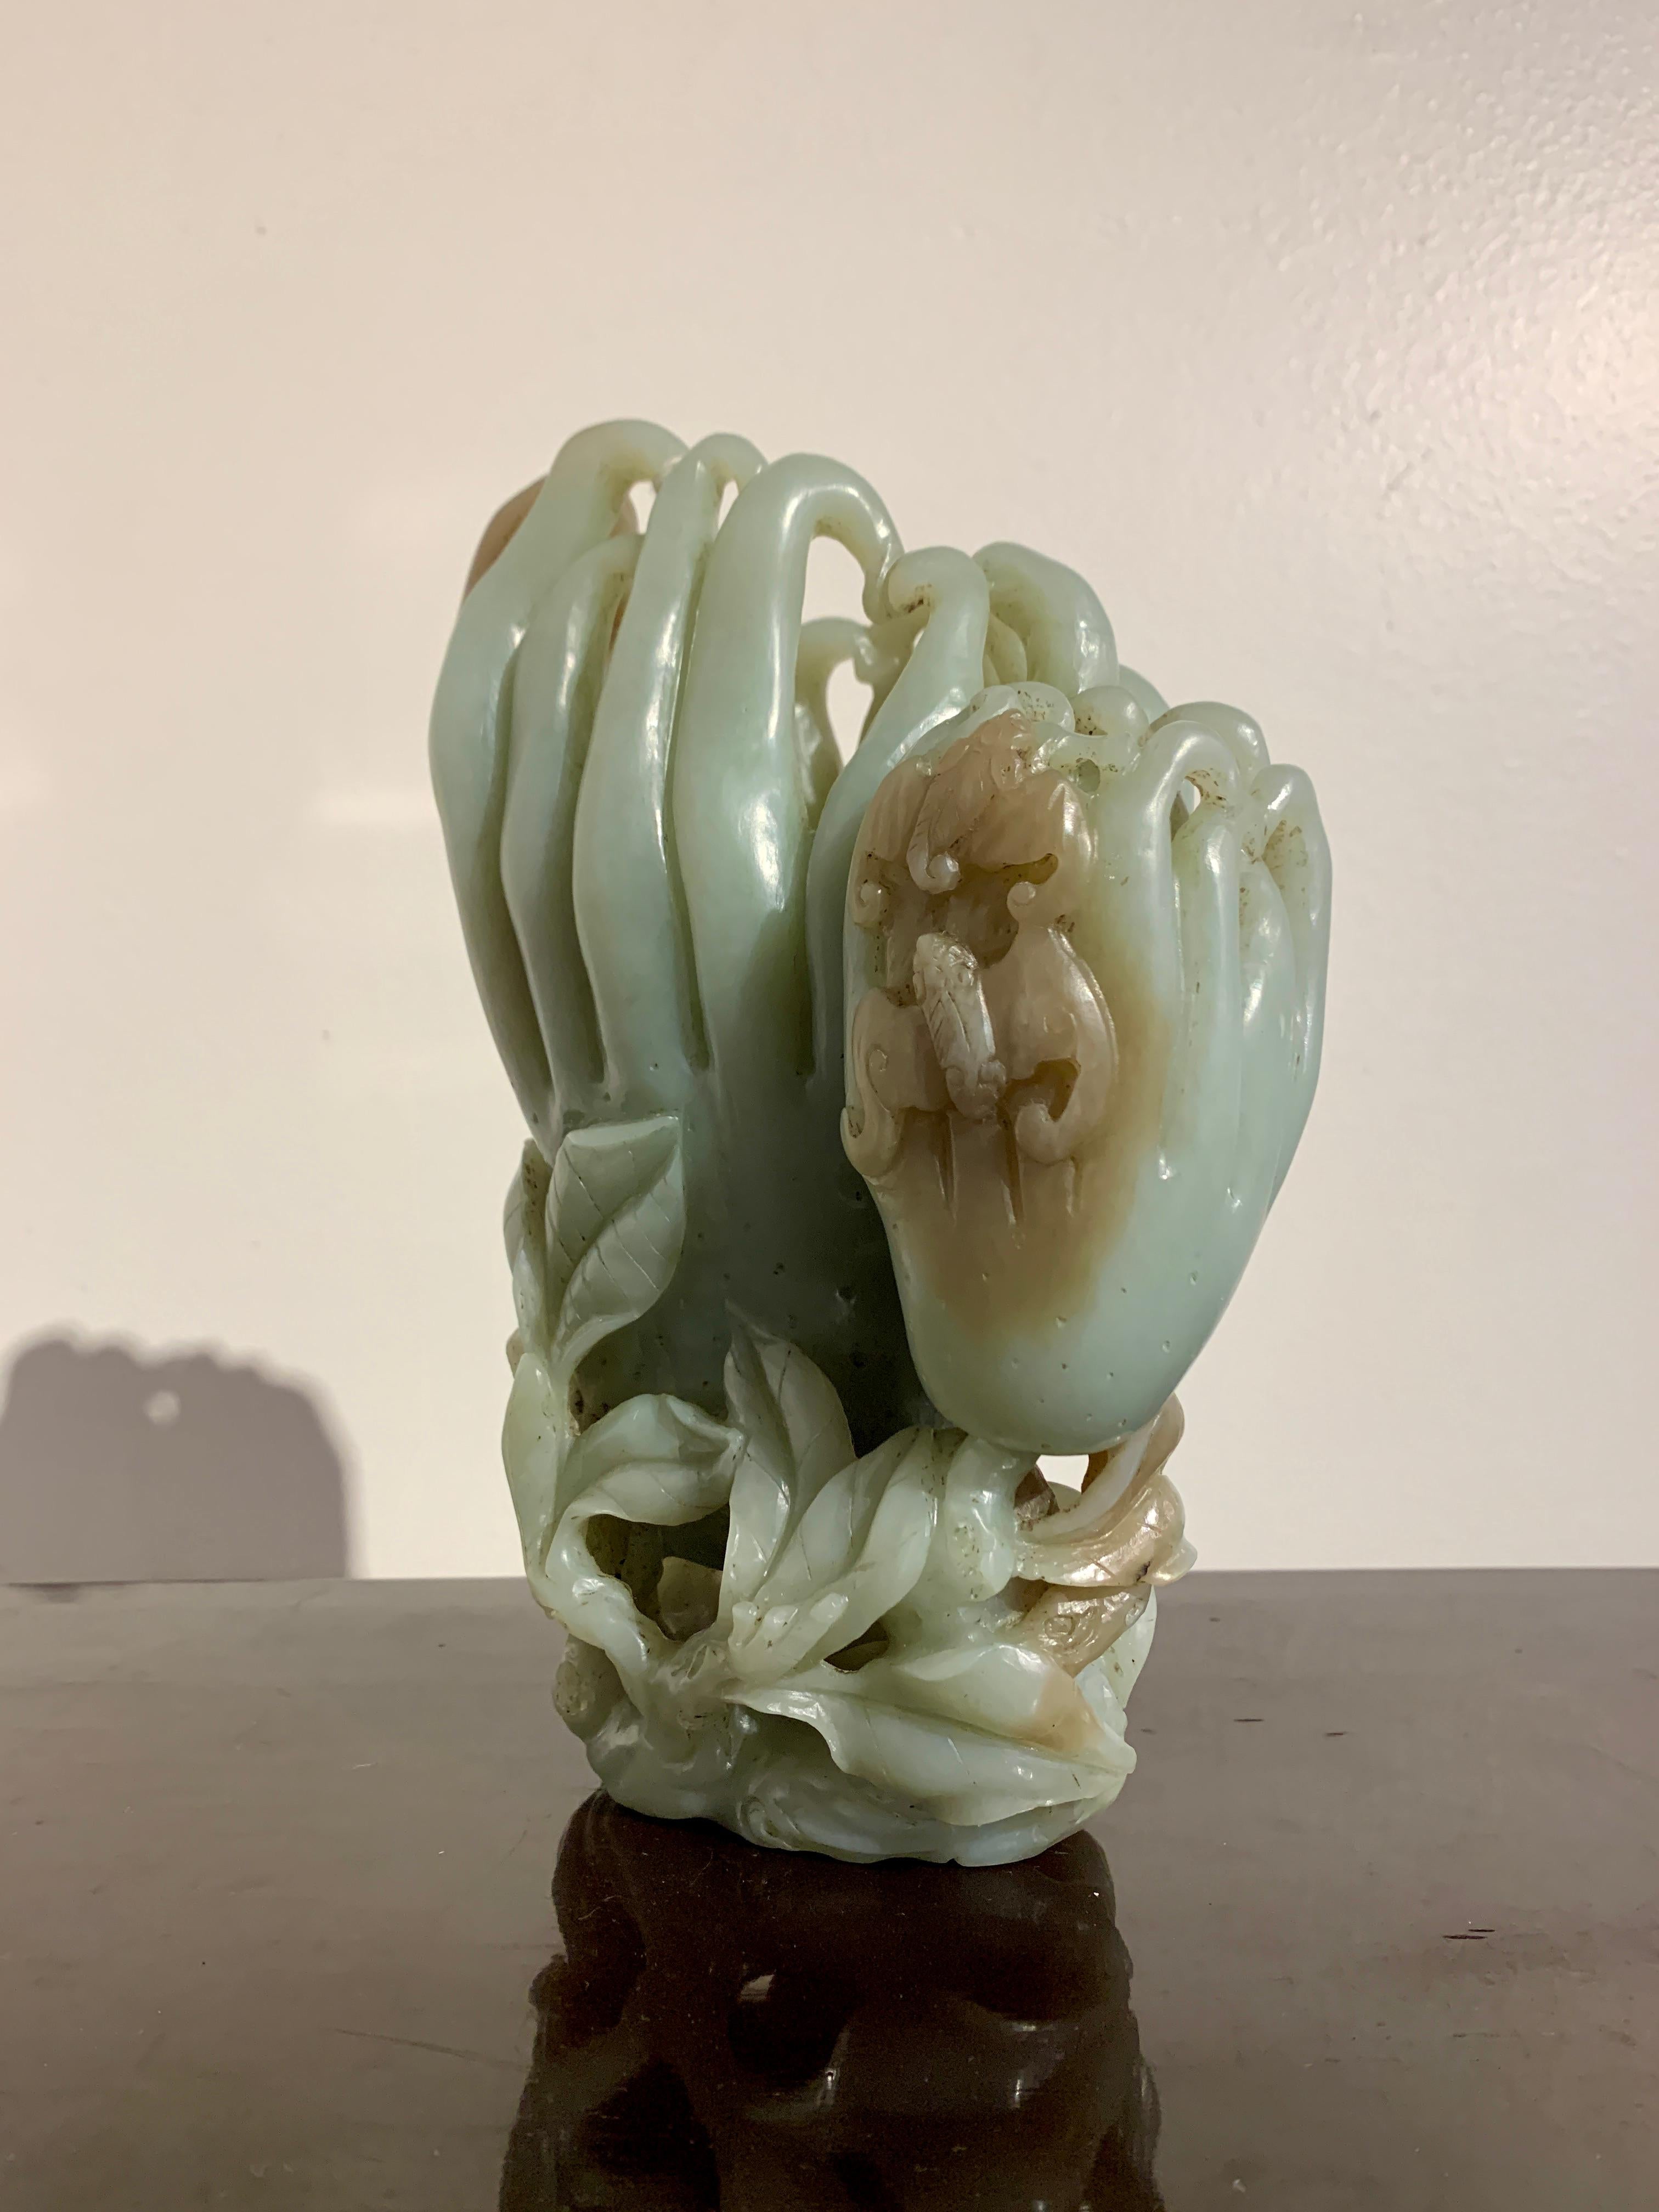 Eine große und anmutig geschnitzte Nephrit-Jade-Doppelvase in Form eines Buddha-Hände-Paares (Fingerzitrone), späte Qing-Dynastie, um 1900, China.

Die große und schwere Vase ist aus einem einzigen Stück Celadon-Nephrit-Jade geschnitzt, mit